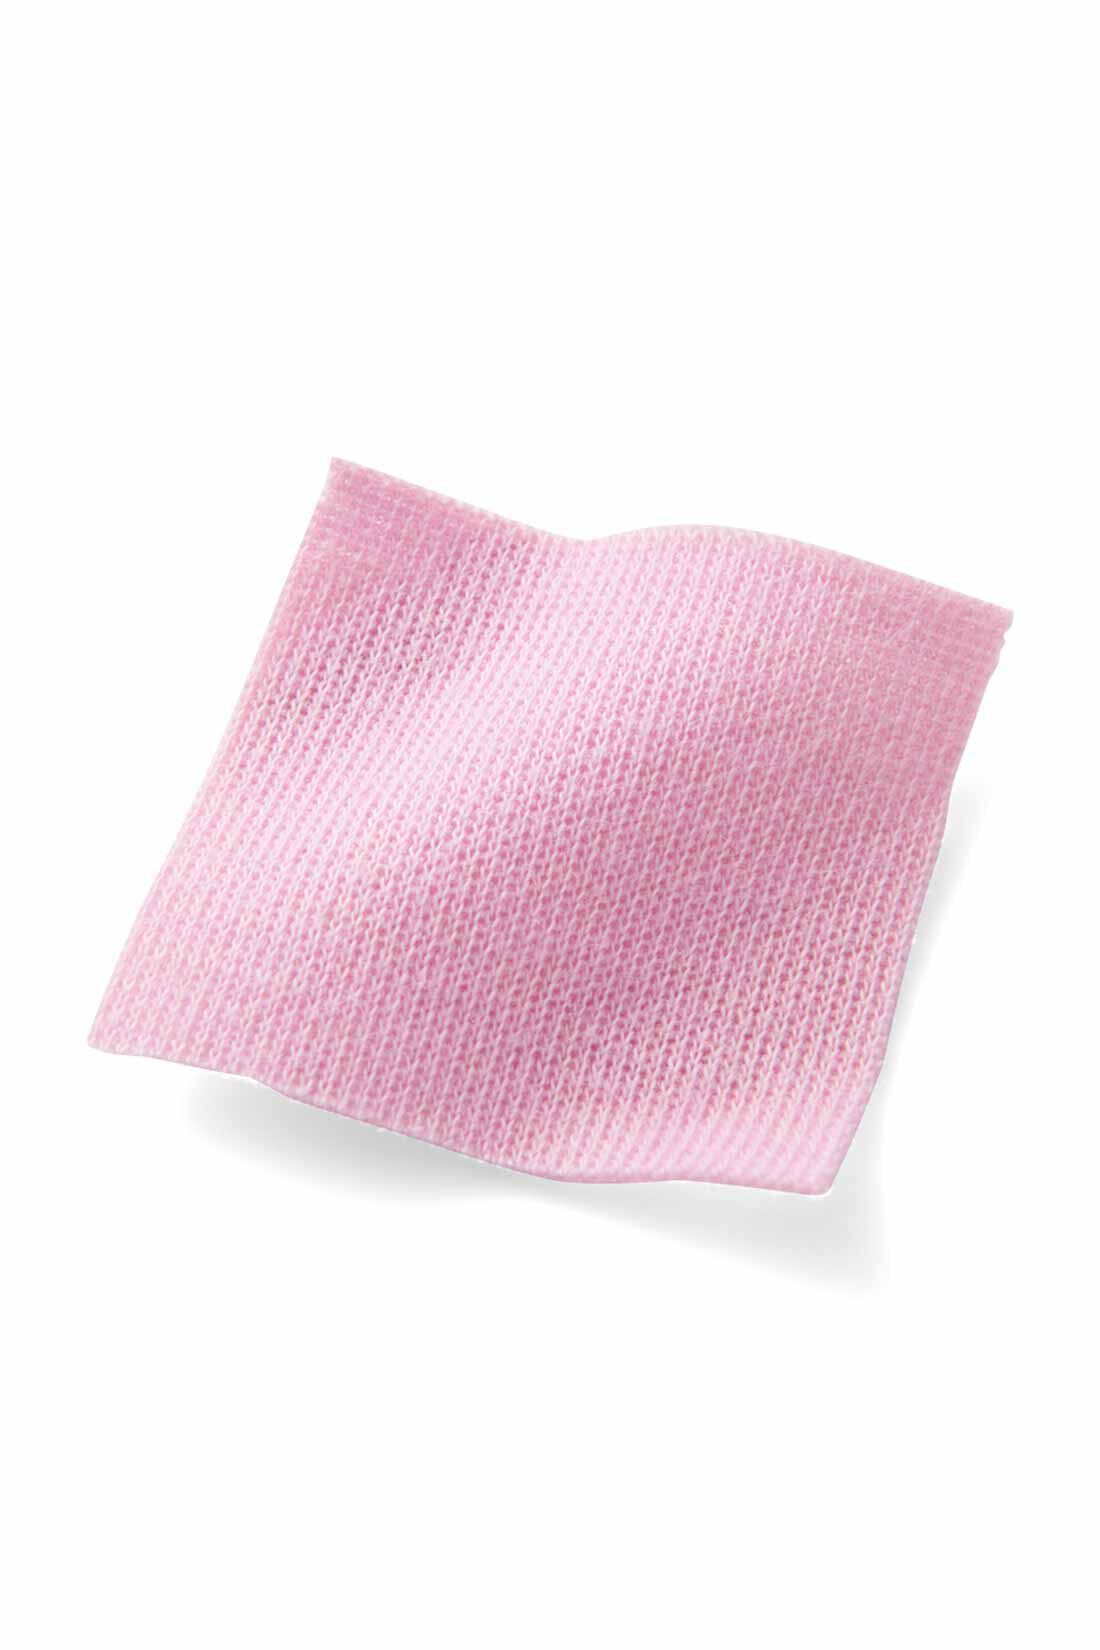 【イラストレーターきくちあつこさんコラボ】IEDIT[イディット]　フレアーマキシワンピース〈ピンク〉|通年着られる肉厚でやわらかなスムース素材。